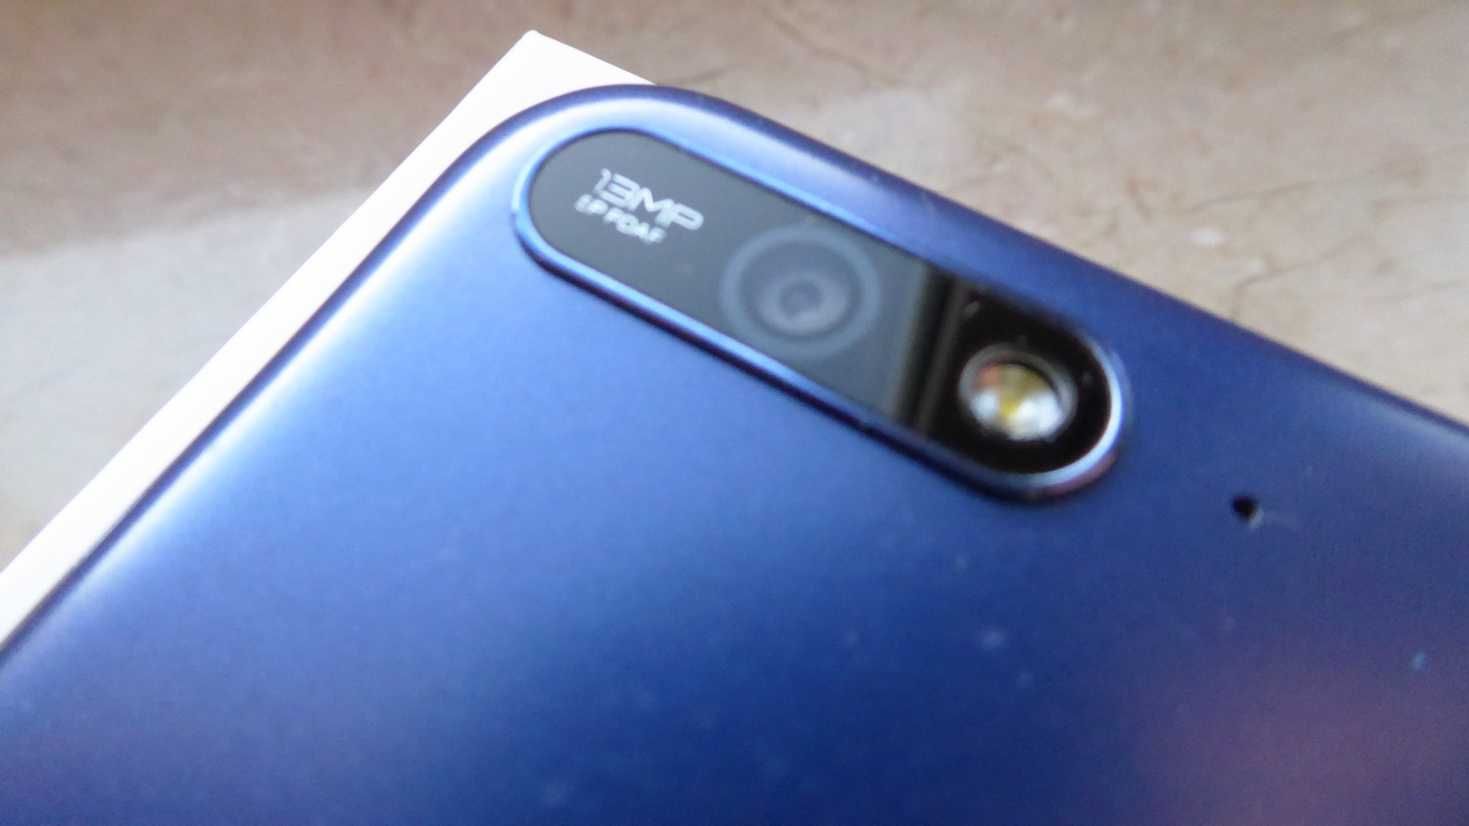 Huawei Y6 2018 Pamięć 16GB / 4G LTE / Niebieski !